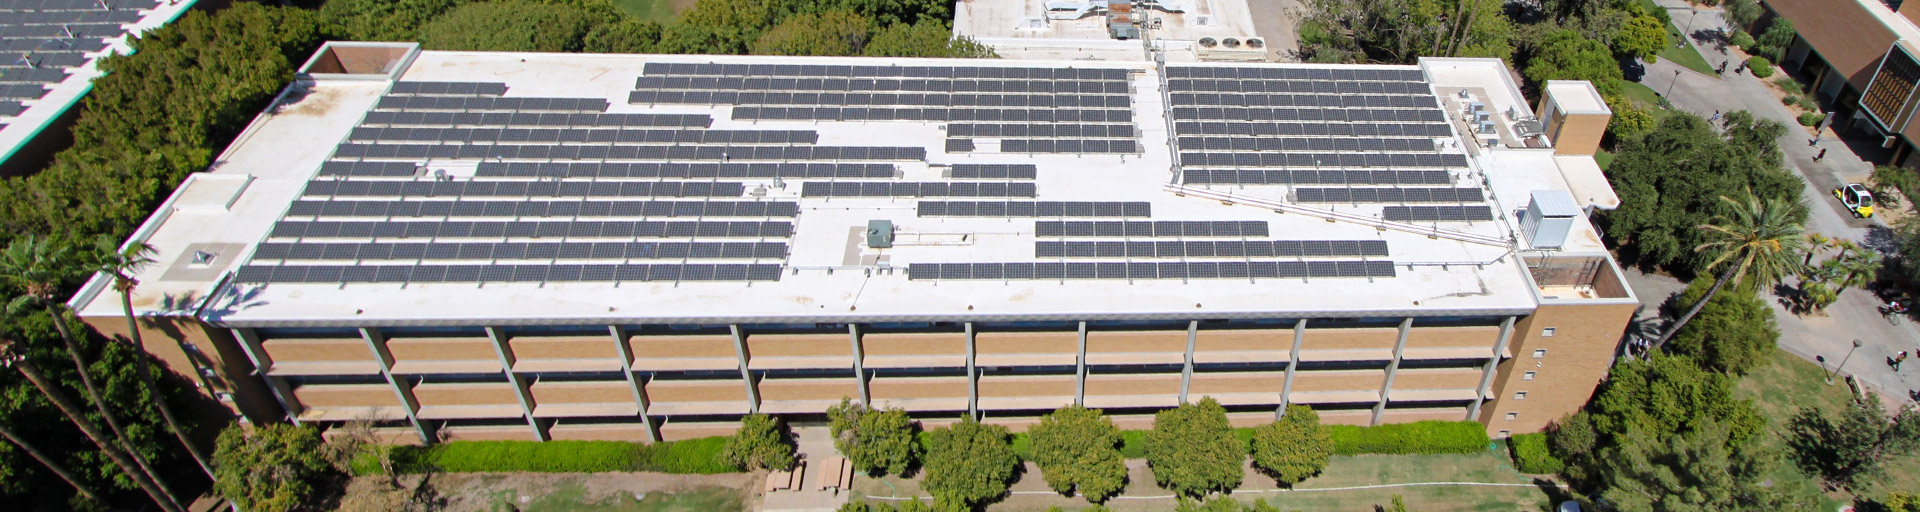 Interdisciplinary B solar panels - aerial